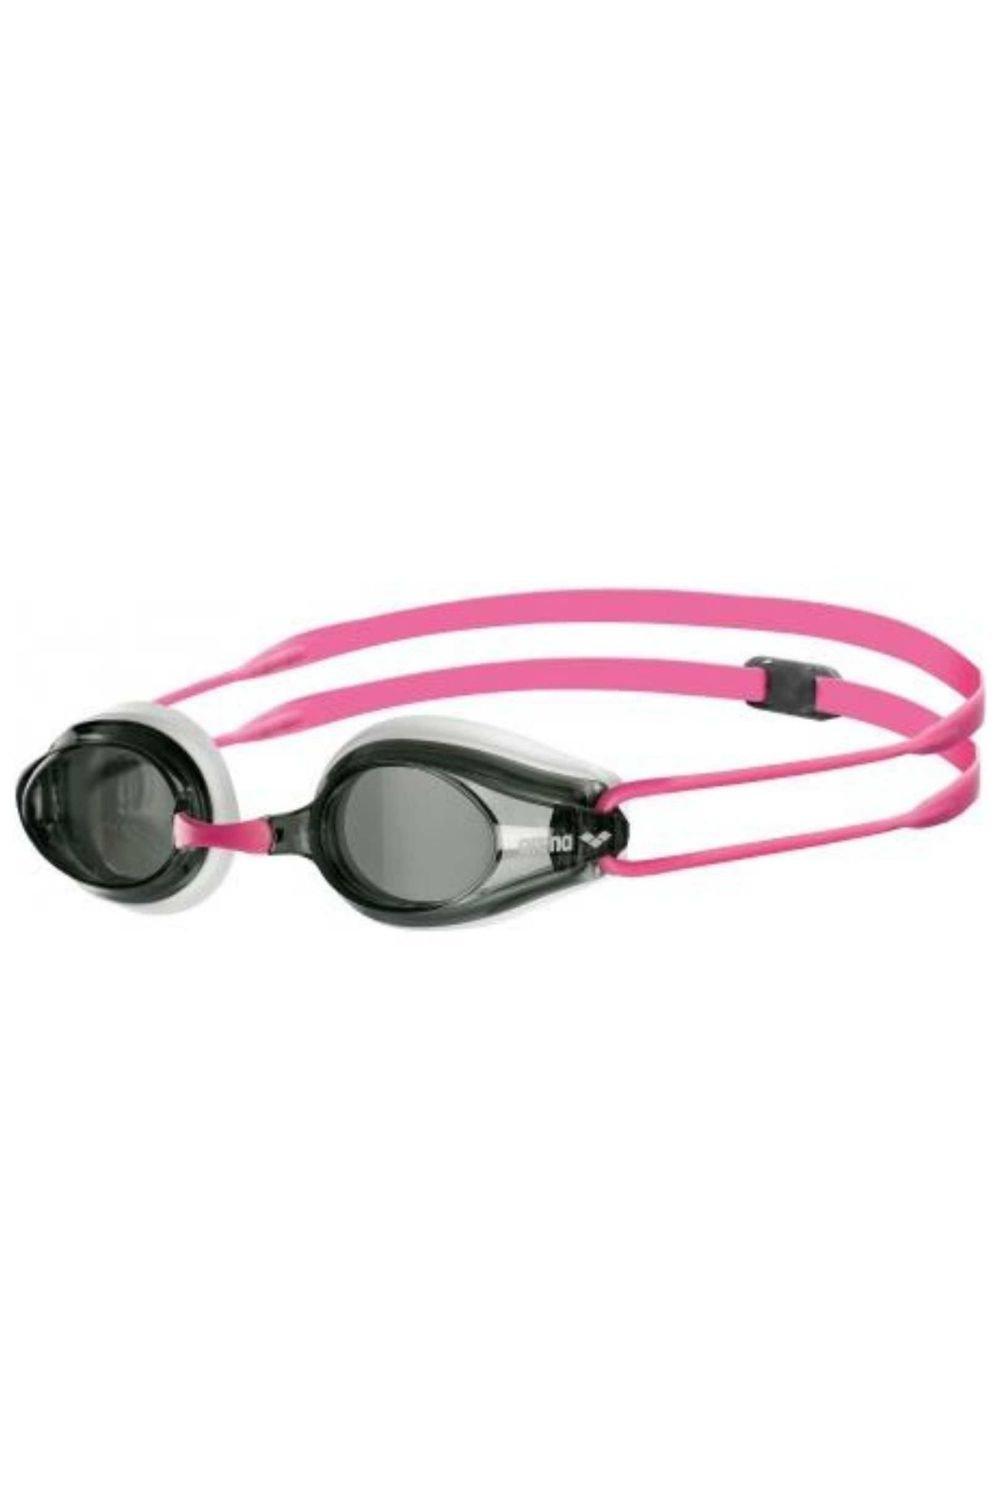 Очки для плавания Tracks - Дымчатая линза Arena, розовый очки для плавания arena tracks синие